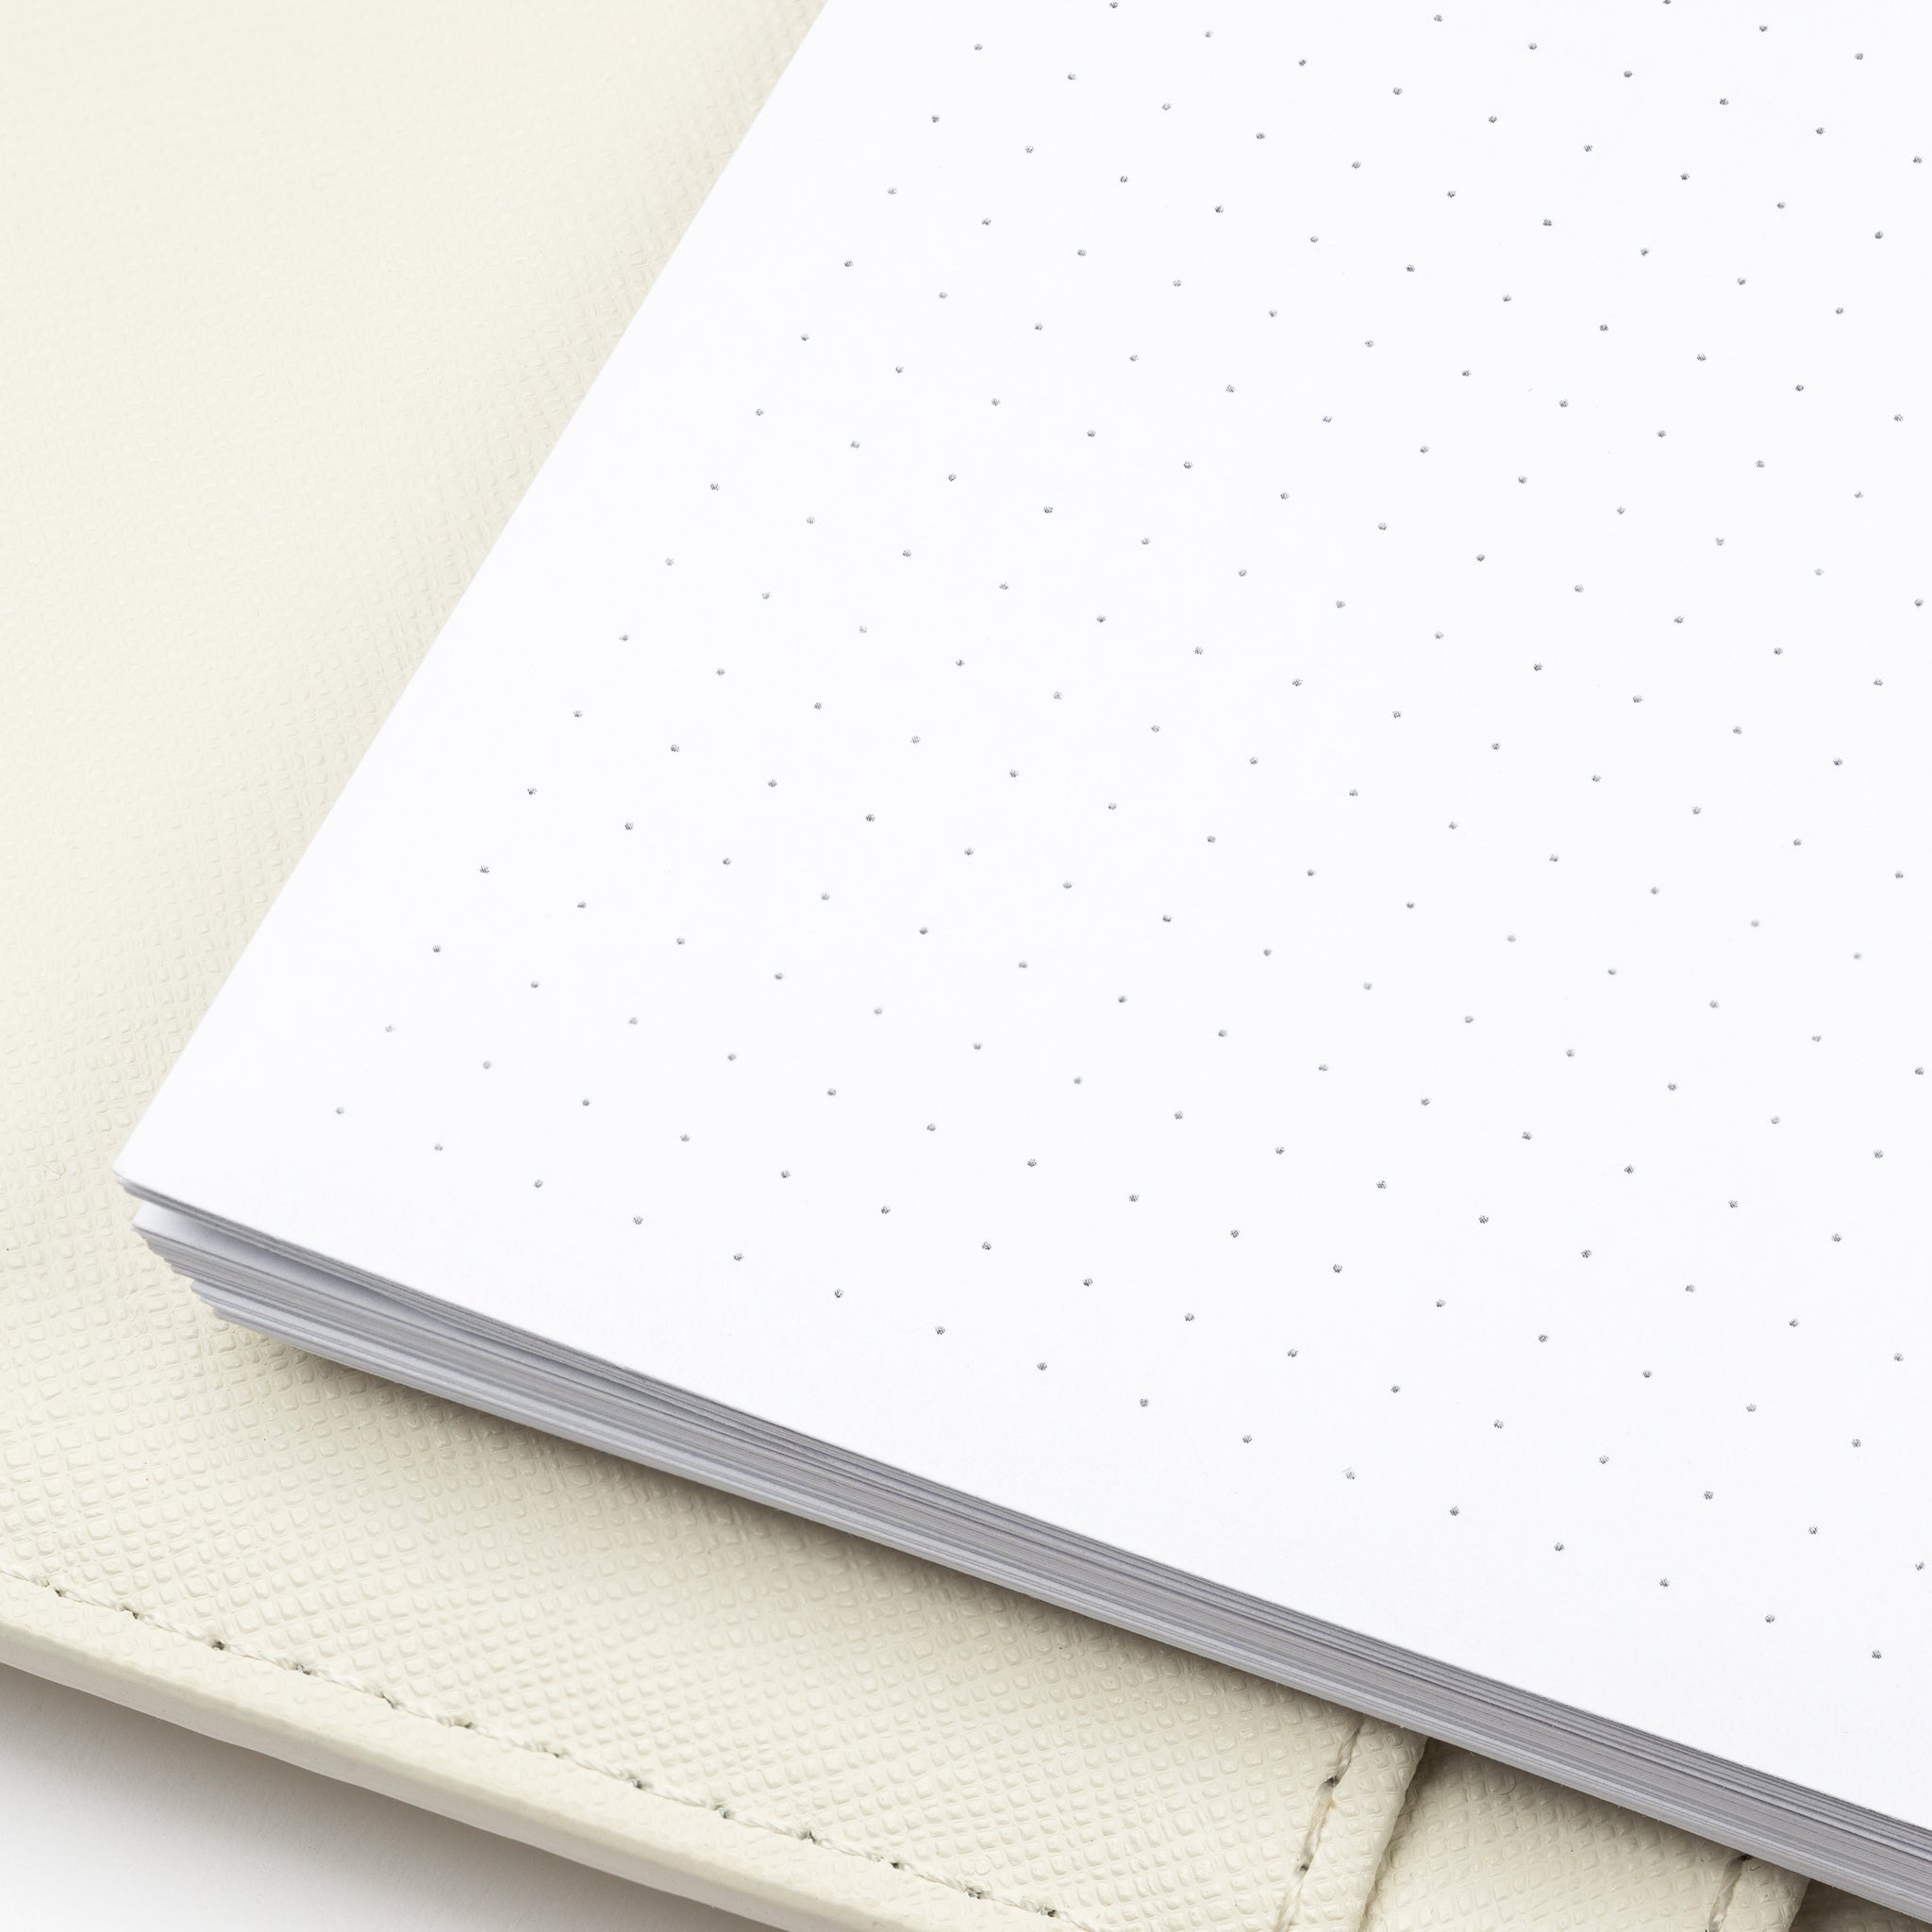 Deluxe Grid Journal Kit Planner Inserts Dot Journal Daily Agenda